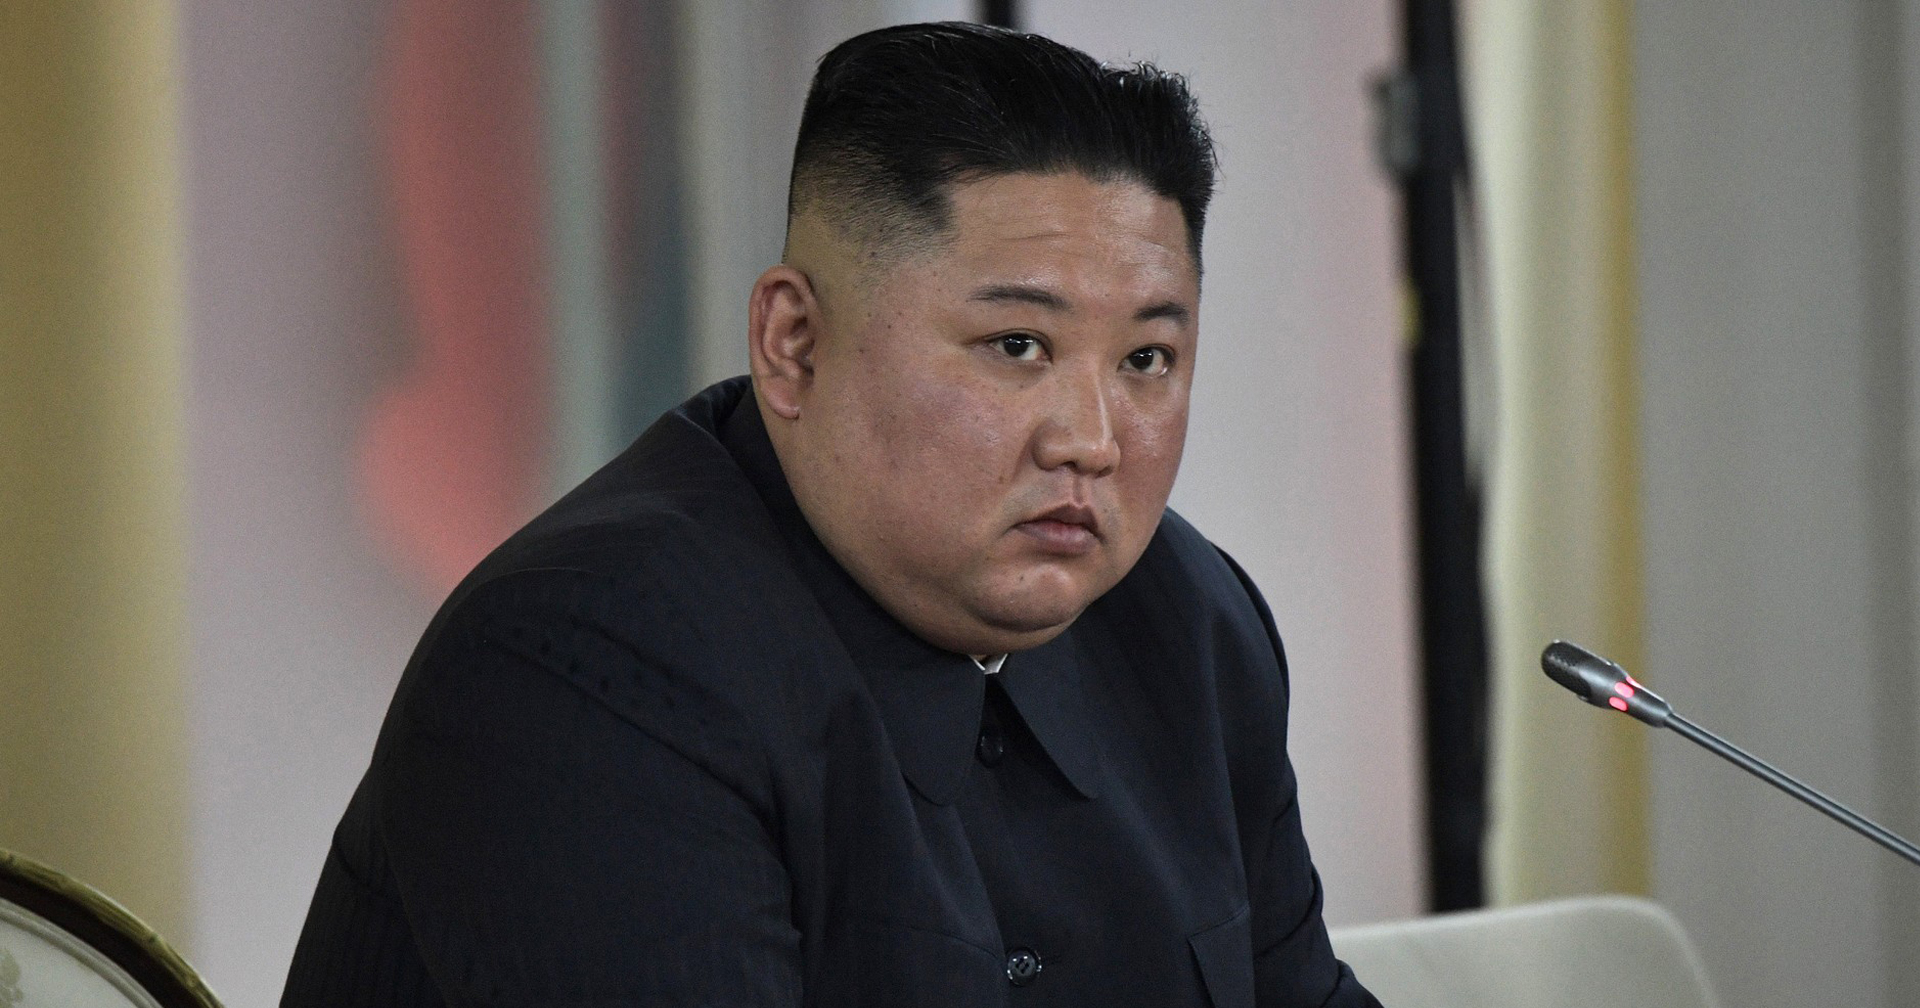 ‘เกาหลีเหนือ’ เริ่มหันมาปลูกฝังประชาชนเรื่องการ ‘รีไซเคิล’ มากขึ้น